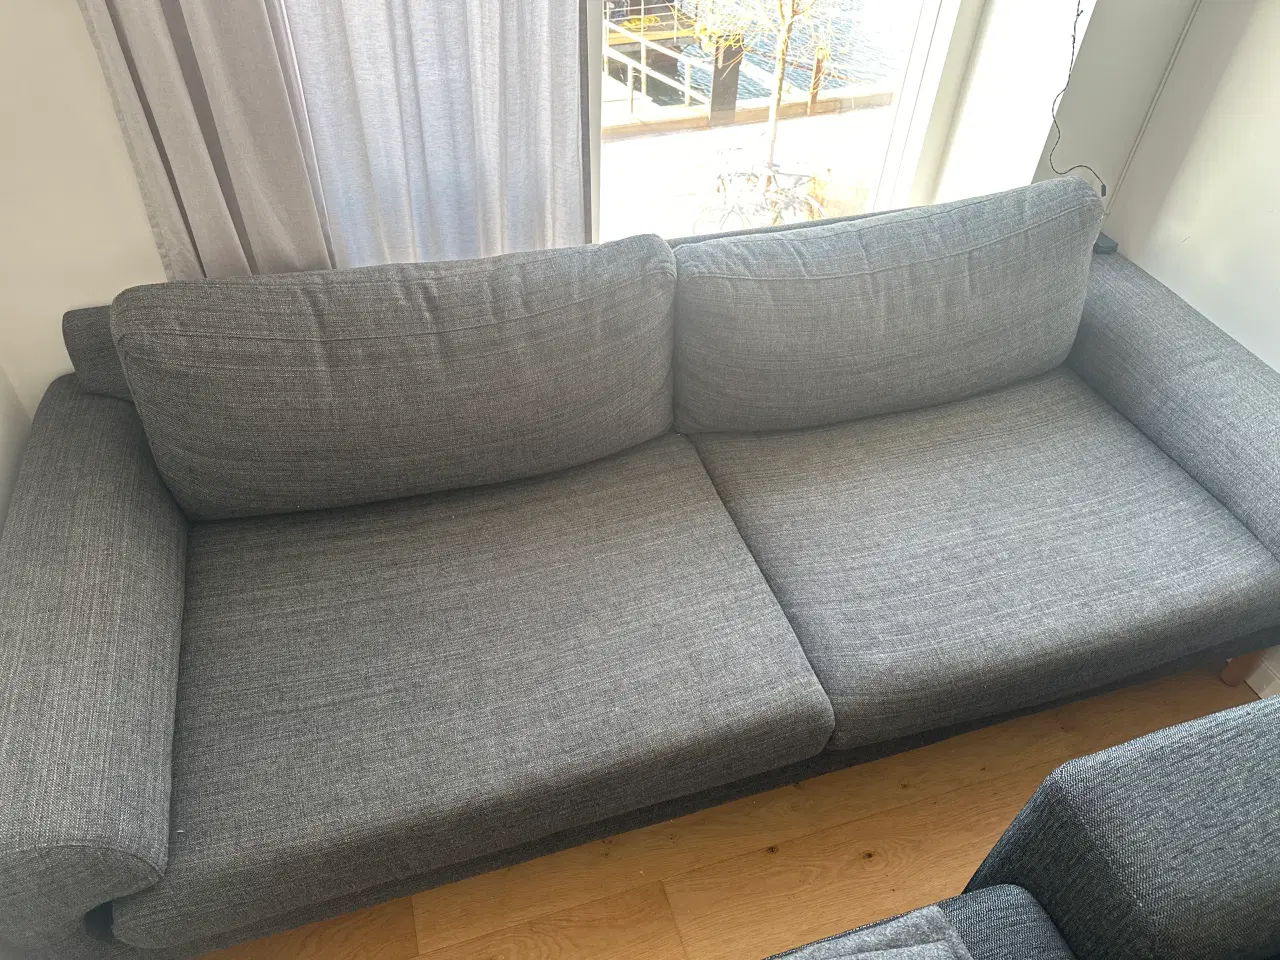 Billede 1 - 3 personers sofa til afhentning